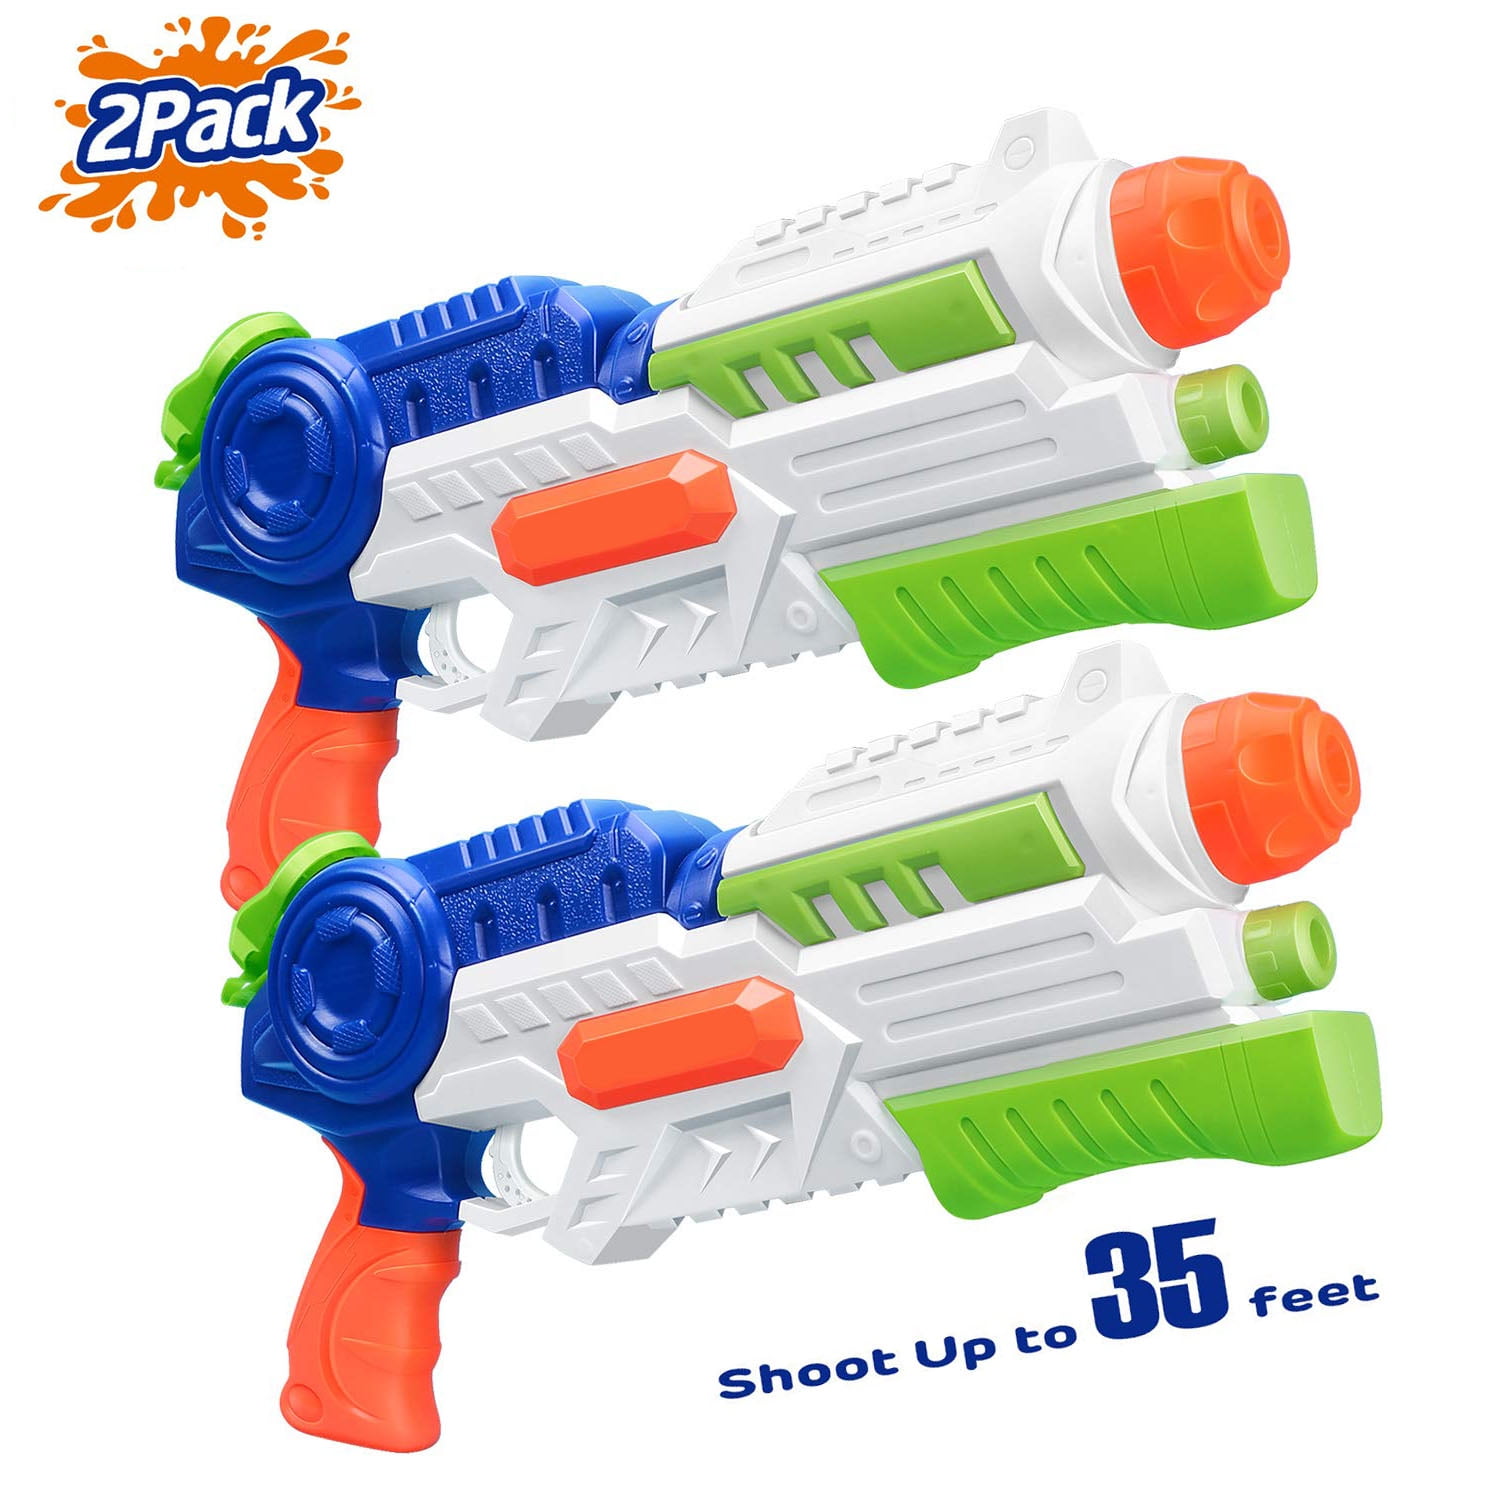 2 Pack Super Soaker Water Gun Squirt Guns Shooter Water Blaster for Kids Adults 